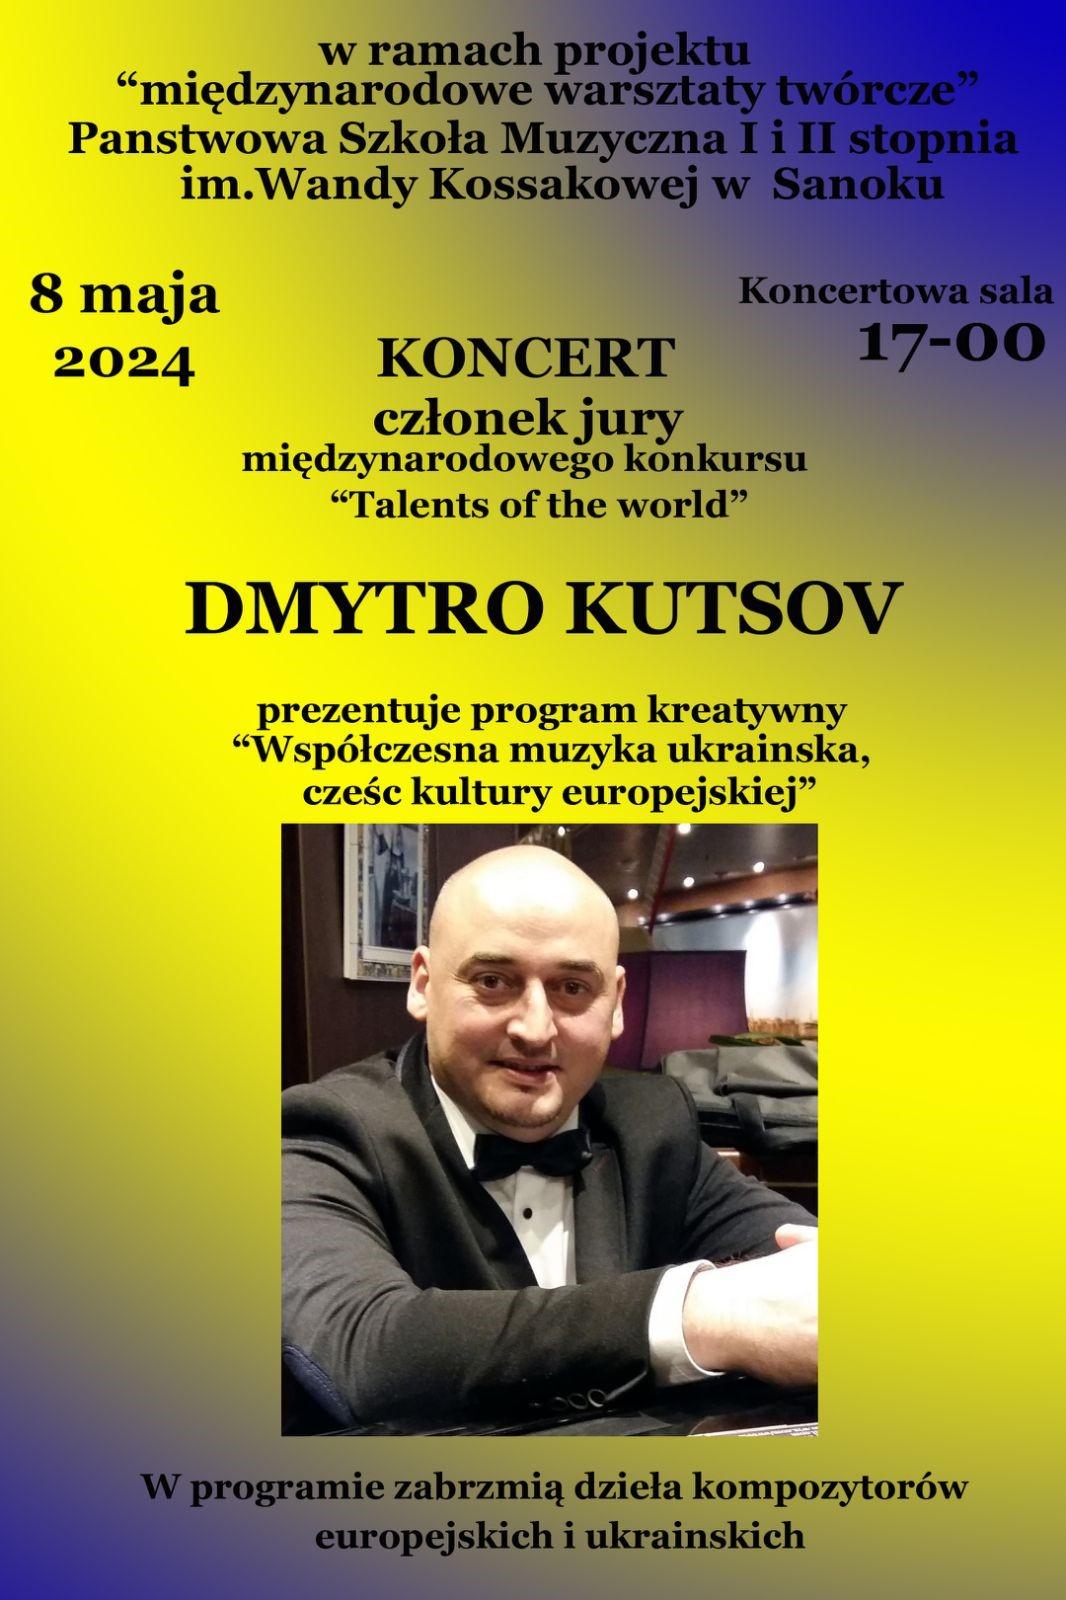 Plakat koncertu - Dmytro Kutsov - Sala koncertowa szkoły, 8 maja 2024r. Żółte tło, na środku duże zdjęcie wykonawcy koncertu.